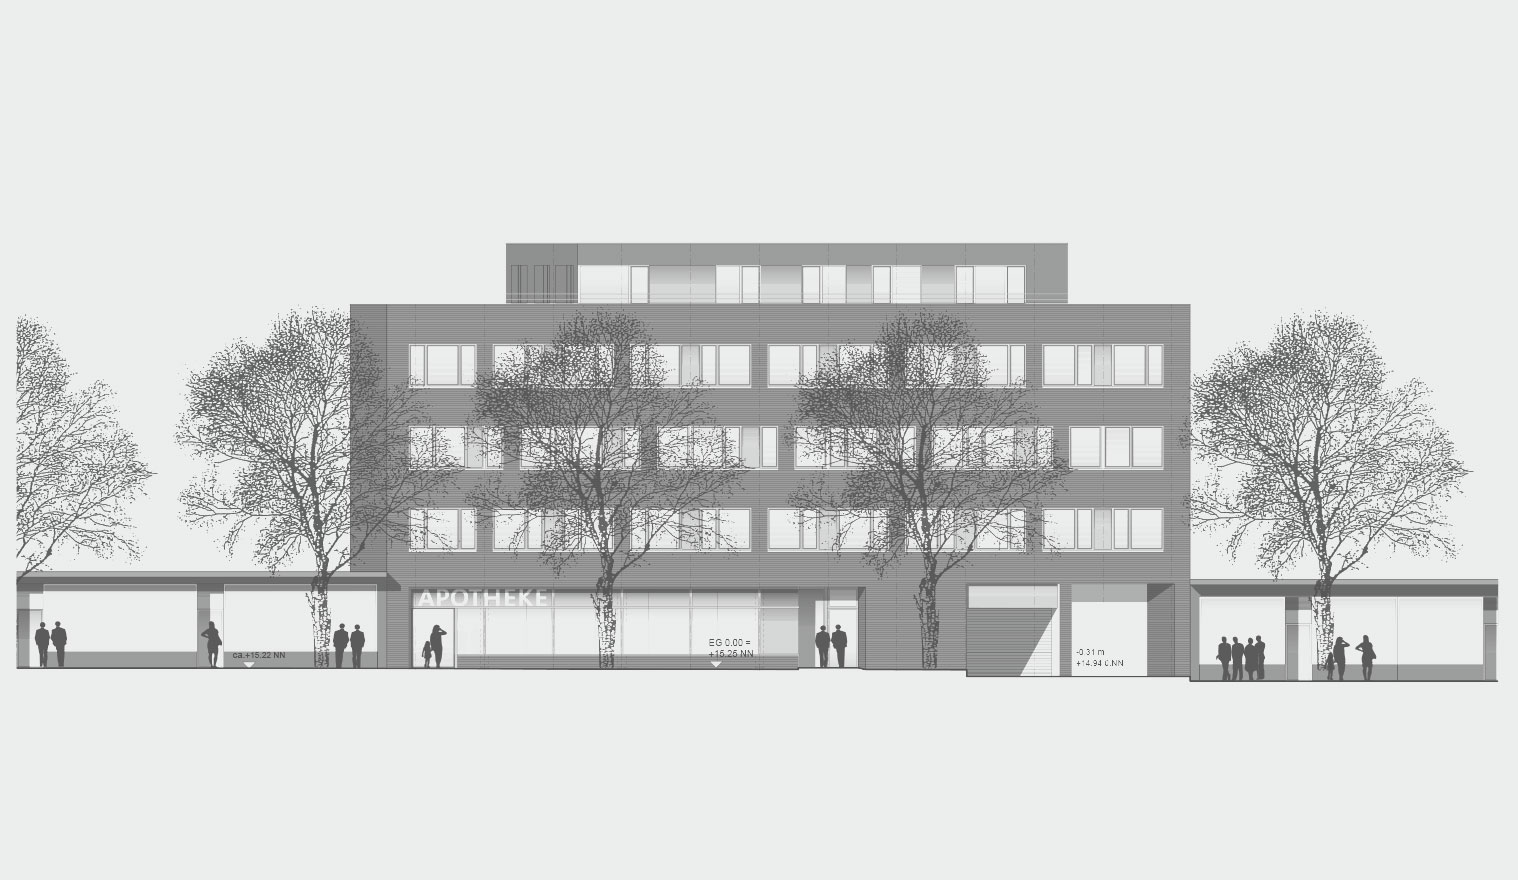 Architekturzeichnung - Diese Zeichnung zeigt ein Bauprojekt für Kapitalanleger in Hamburg – Carl-Petersen-Strasse